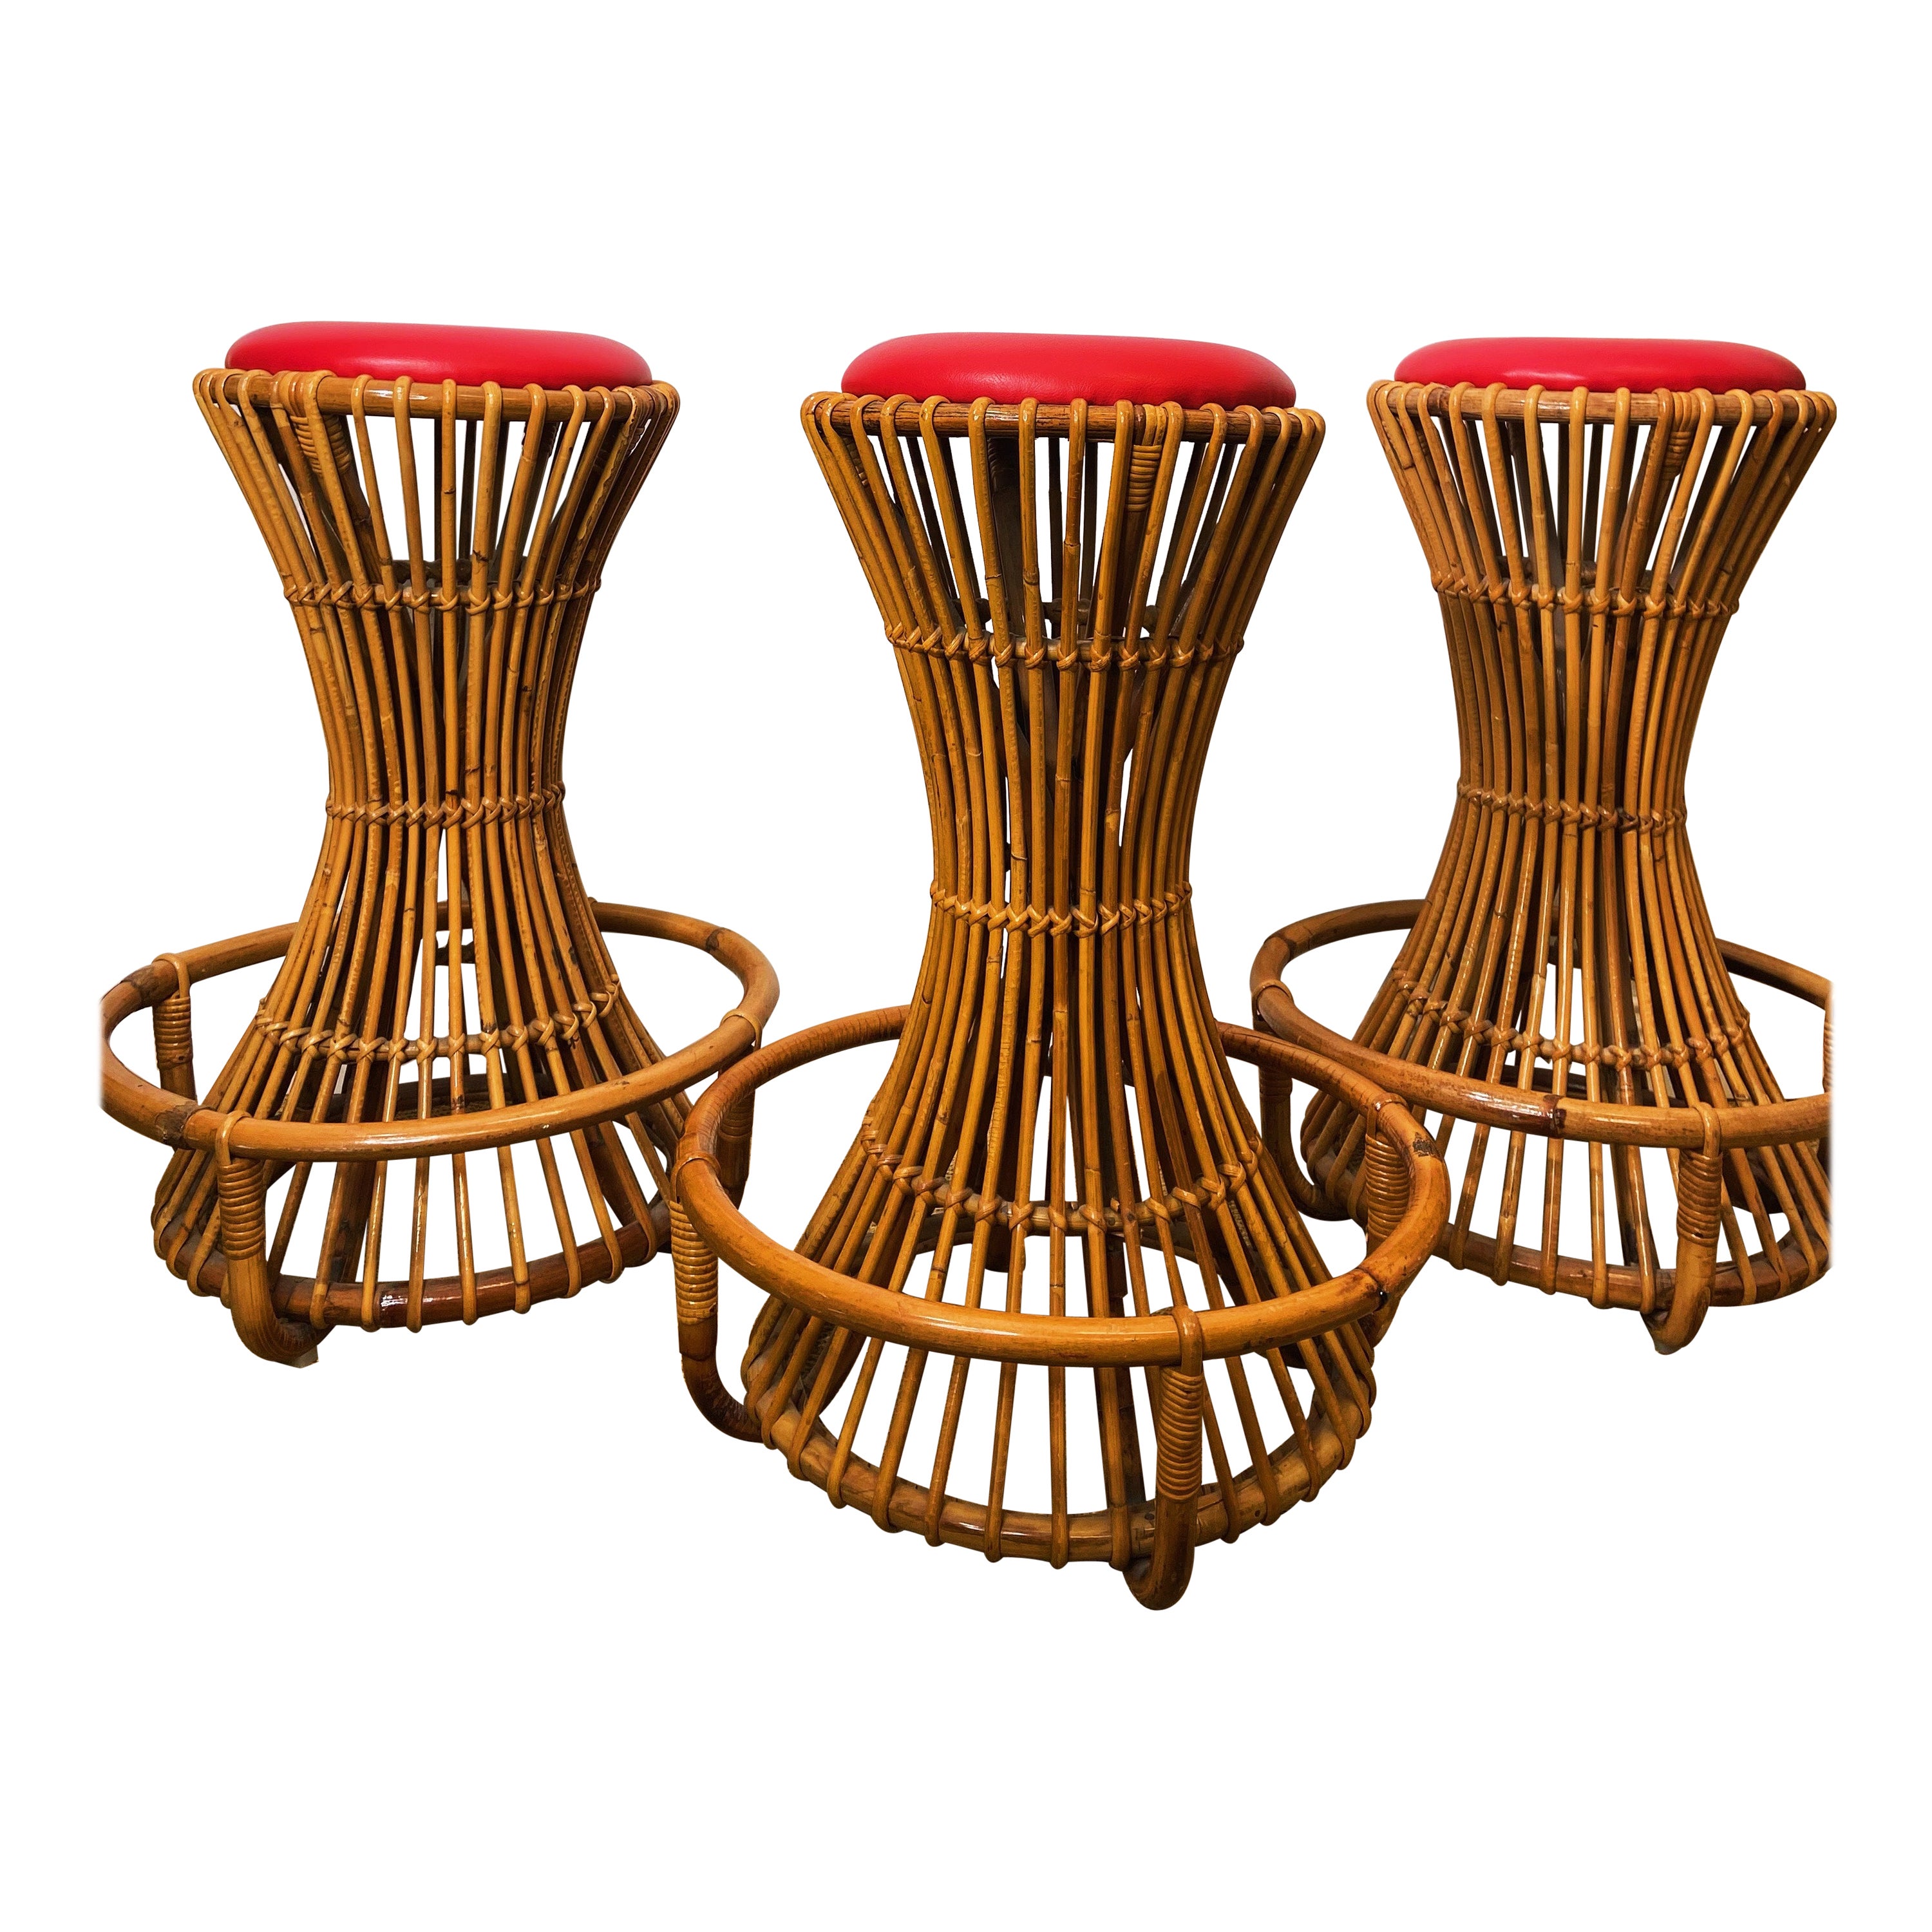 Set of 3 Tito Agnoli for Bonacina Bar Stools Bamboo & Rattan, Italy 1950s  